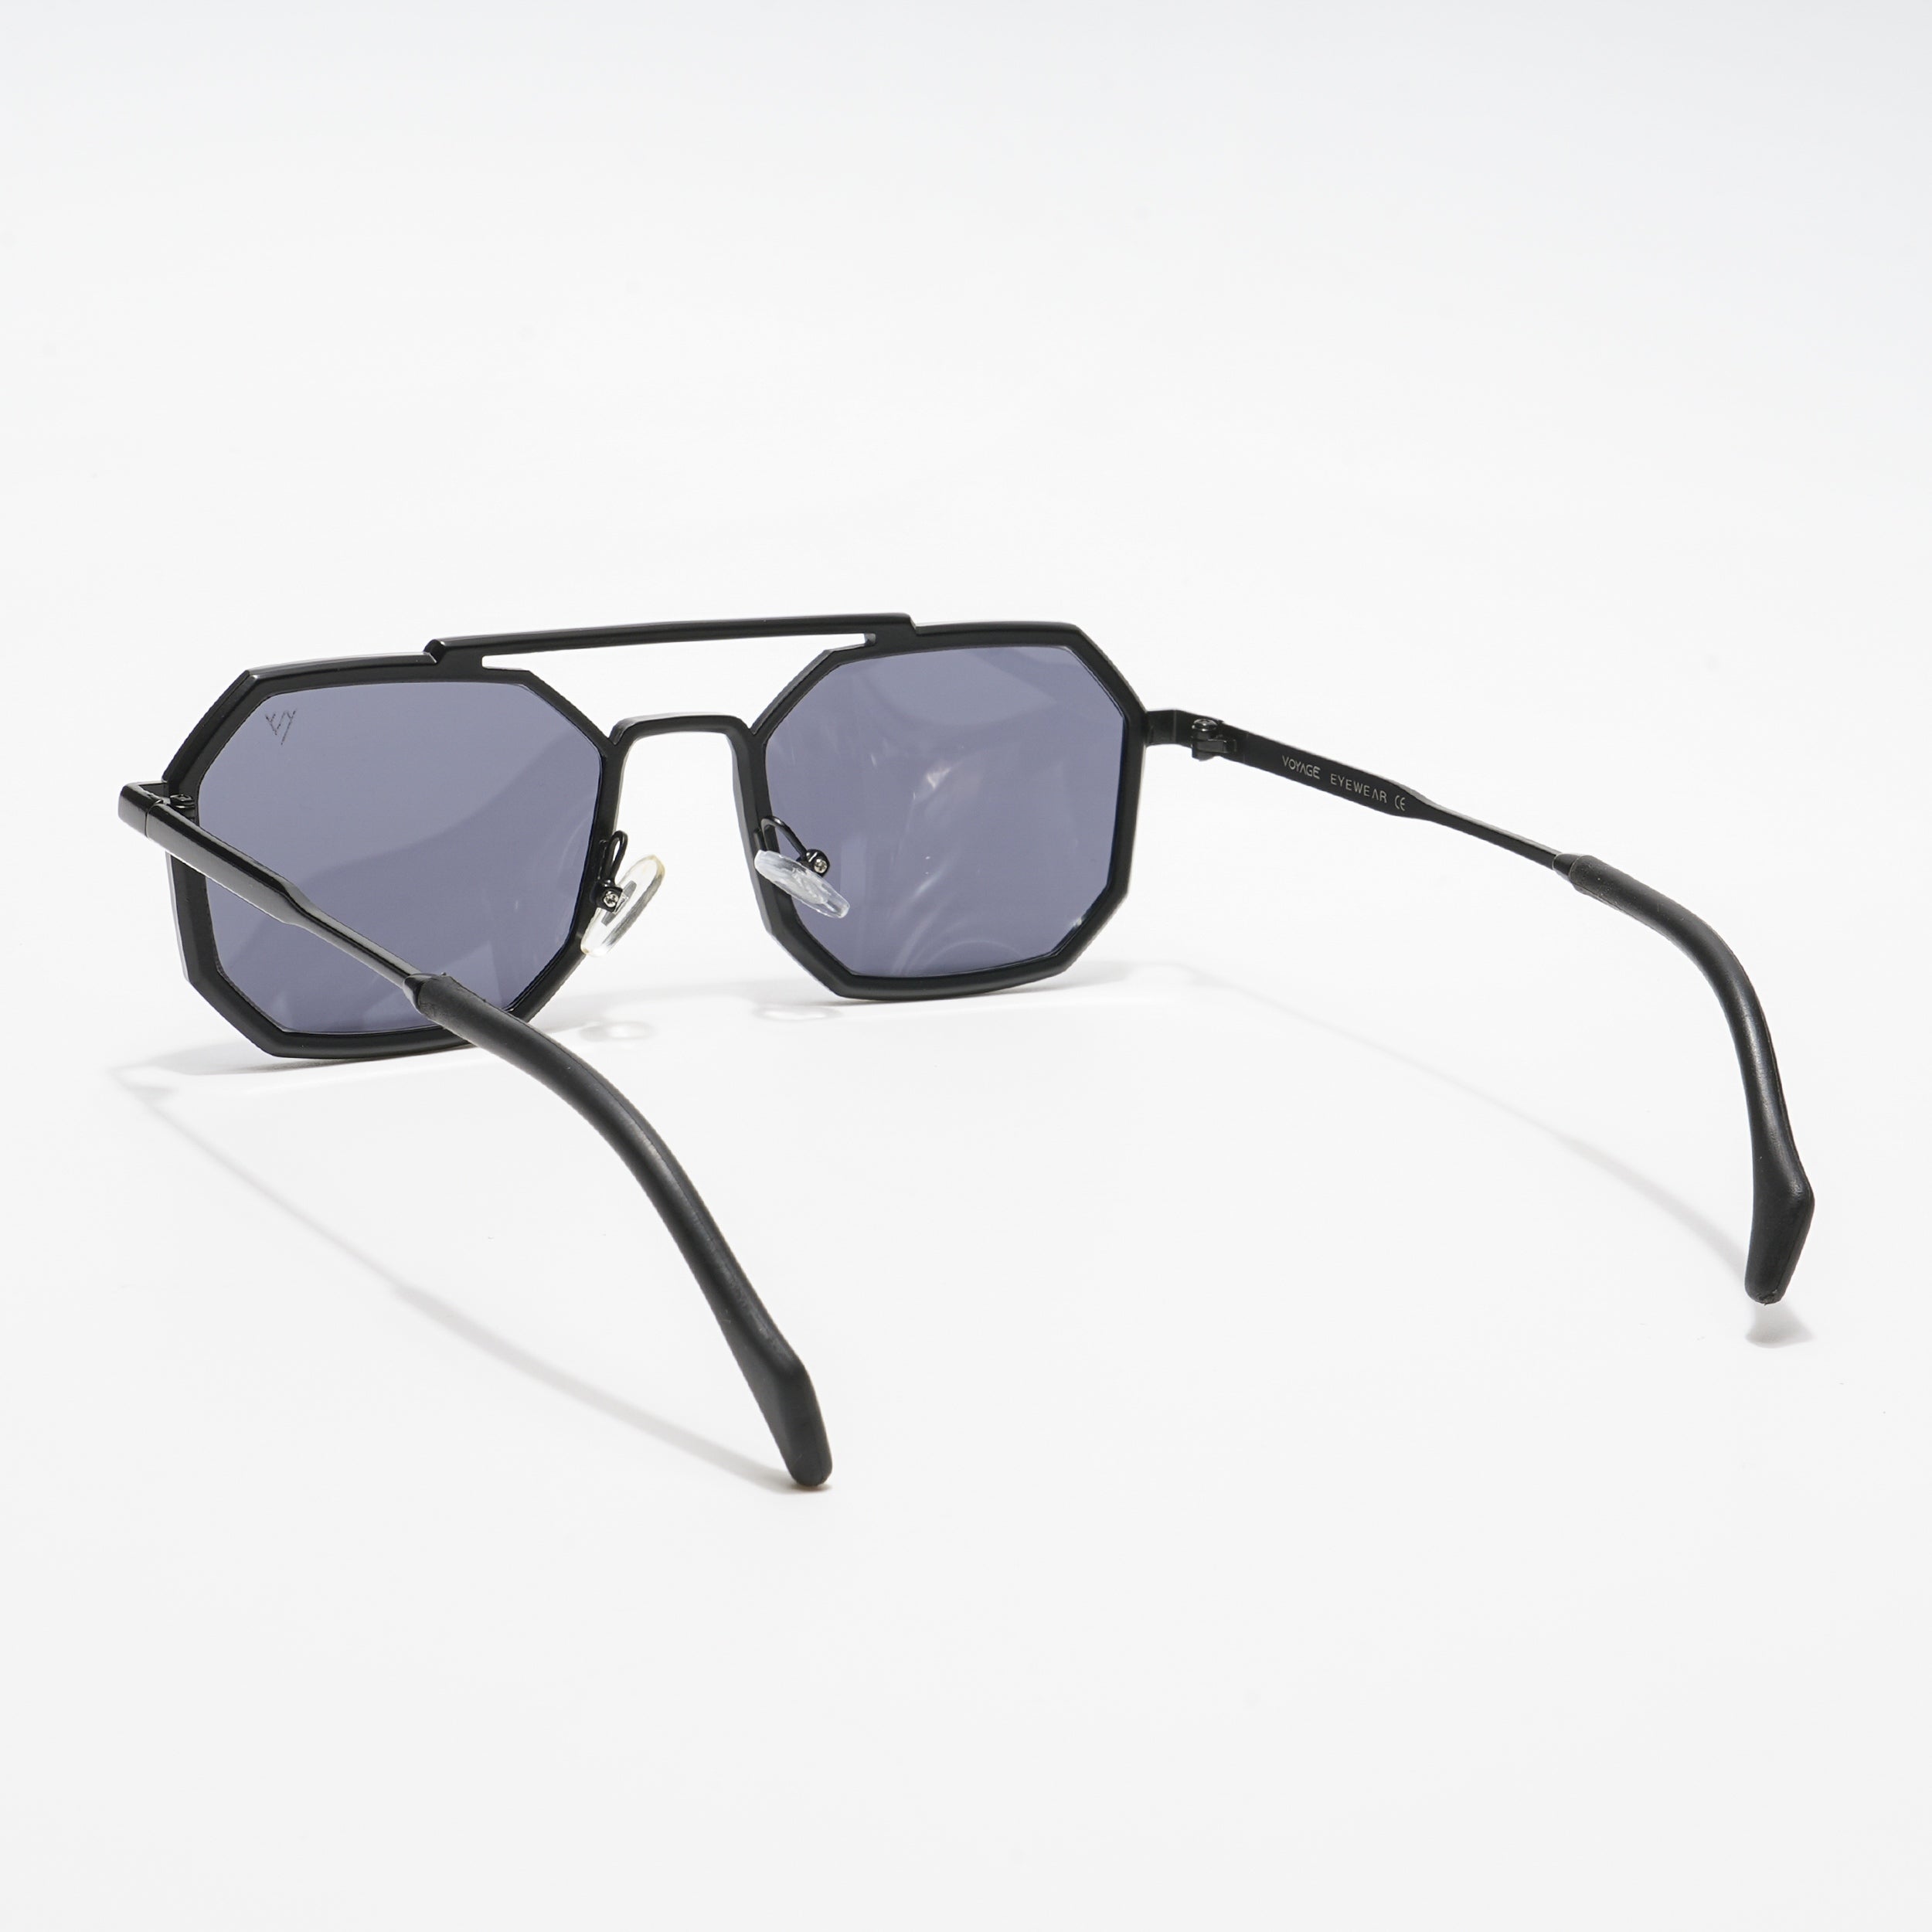 Voyage Retro Square Black Sunglasses MG3620